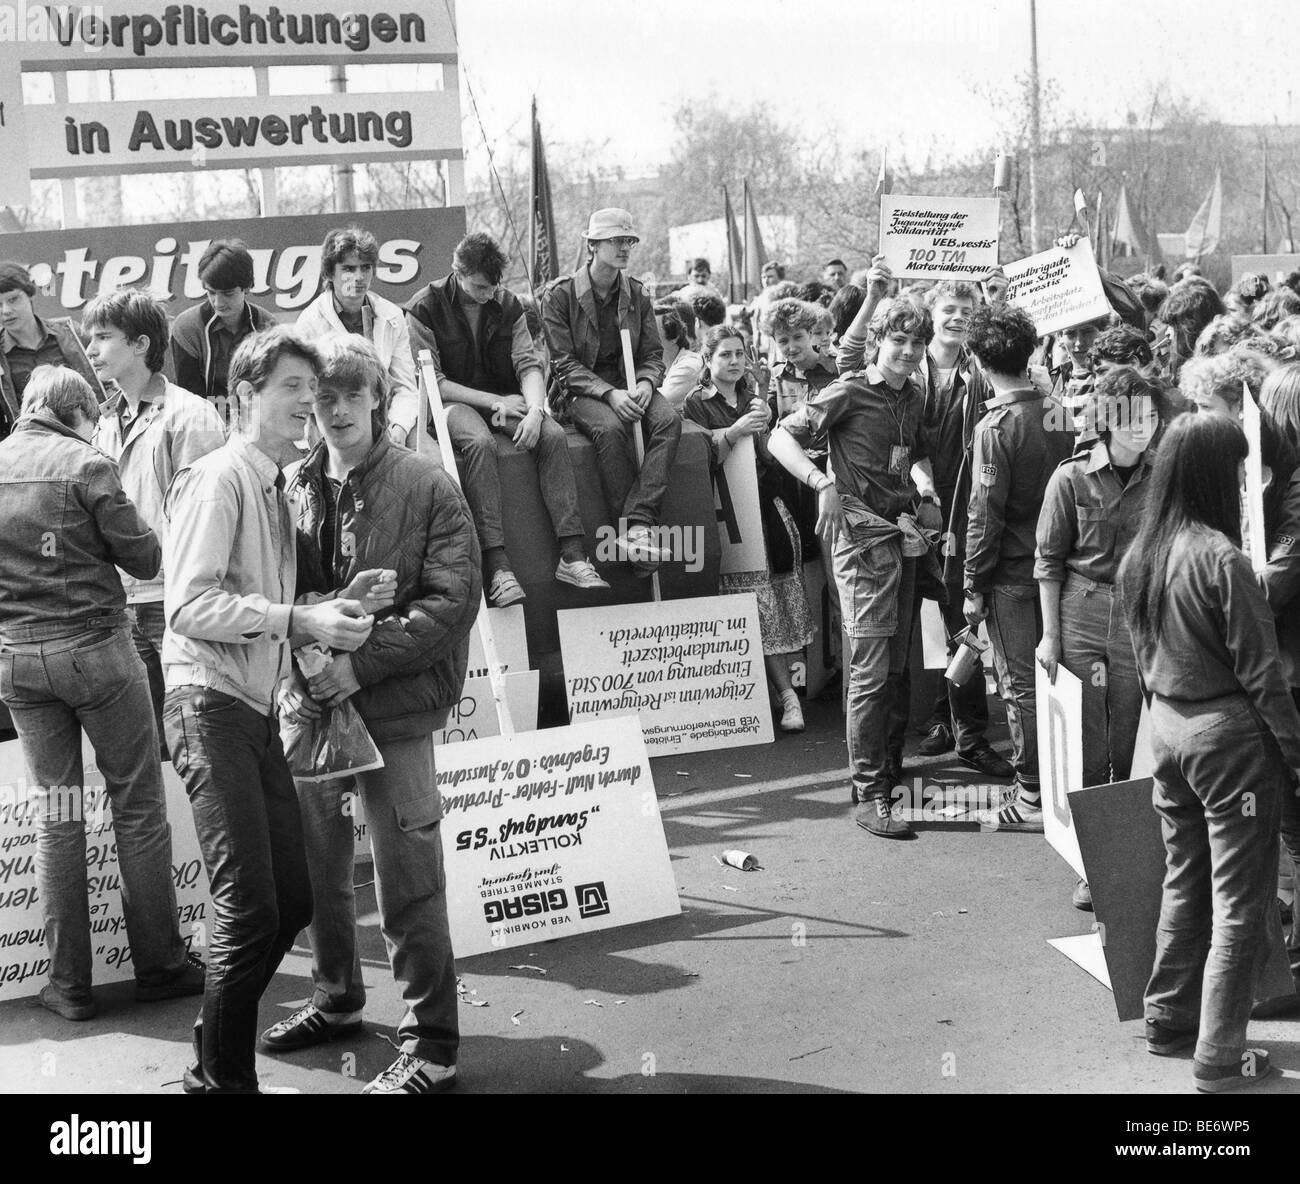 Dimostrazione il 1 maggio, Lipsia, REPUBBLICA DEMOCRATICA TEDESCA, la Germania Est, foto storiche, circa 1985 Foto Stock